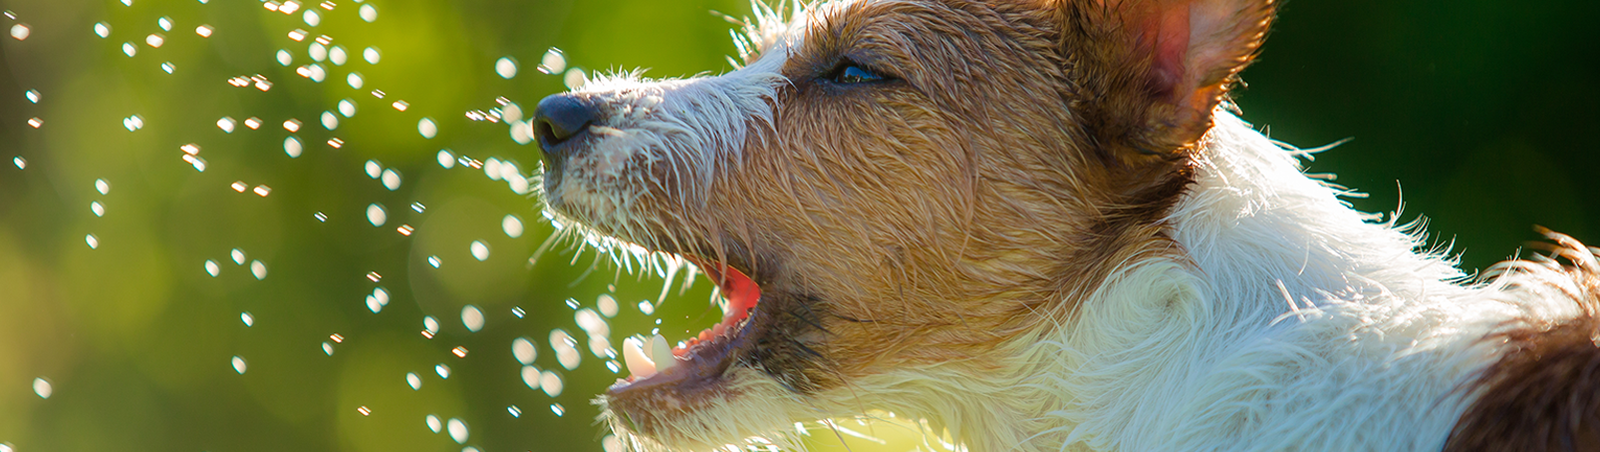 Ein Hund schnappt nach Wassertropfen.